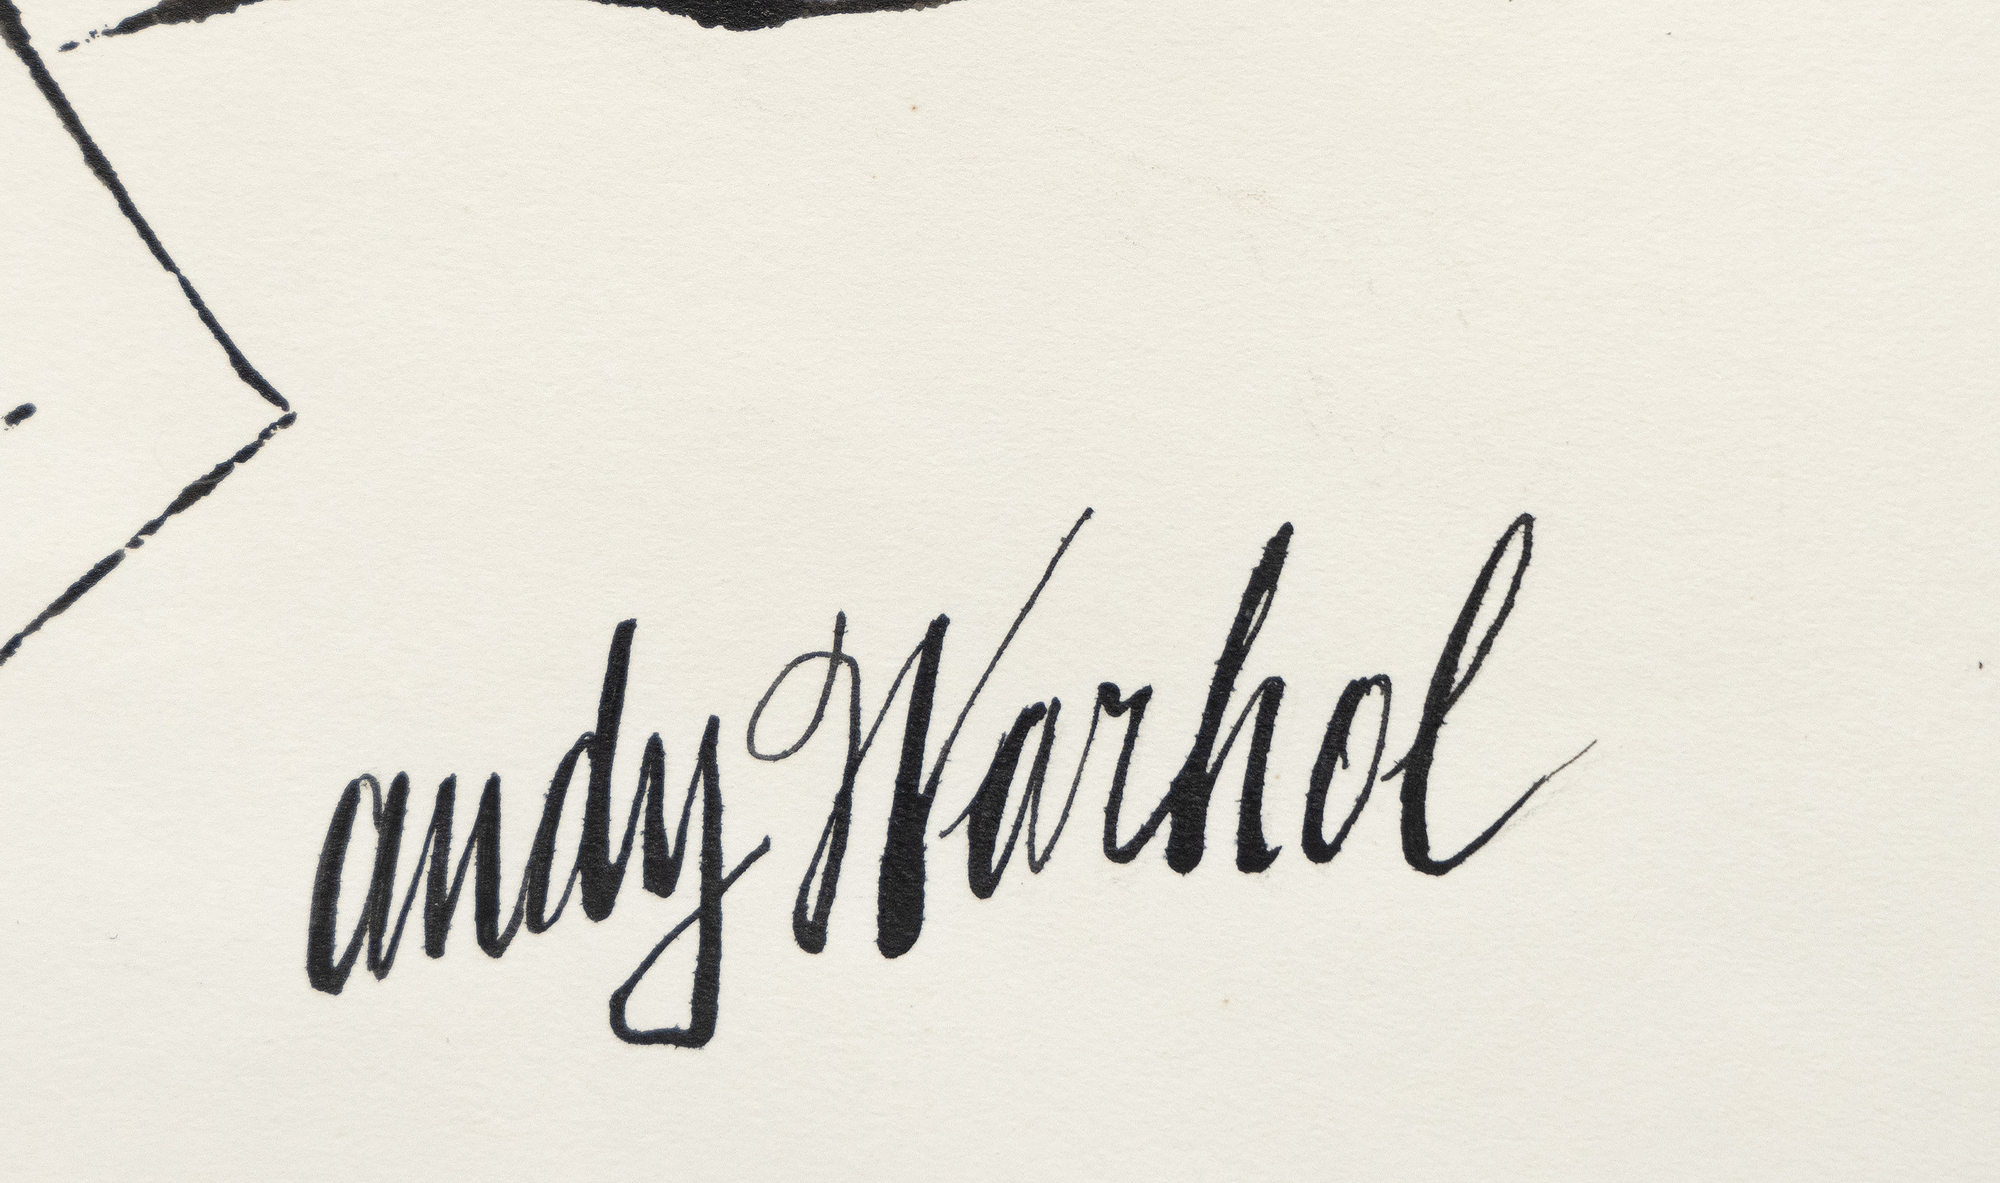 A menudo pasados por alto, los dibujos en tinta y color de Warhol muestran su habilidad para reducir motivos y elementos a su naturaleza esencial utilizando una economía de línea y una maravillosa jovialidad que caracteriza a cada uno de ellos. A menudo nos recuerdan que el arte puede ser el mejor proveedor de humor y capricho si no se complica y fluye libremente. Sin título, Flores es un anticipo de su famoso diseño para Vogue de 1960, que combina dibujos de flores en colores fluorescentes. Anticipa la temprana inclinación de Warhol a separar la línea del color, un recurso que más tarde daría a sus imágenes serigrafiadas su inmediatez abstracta.